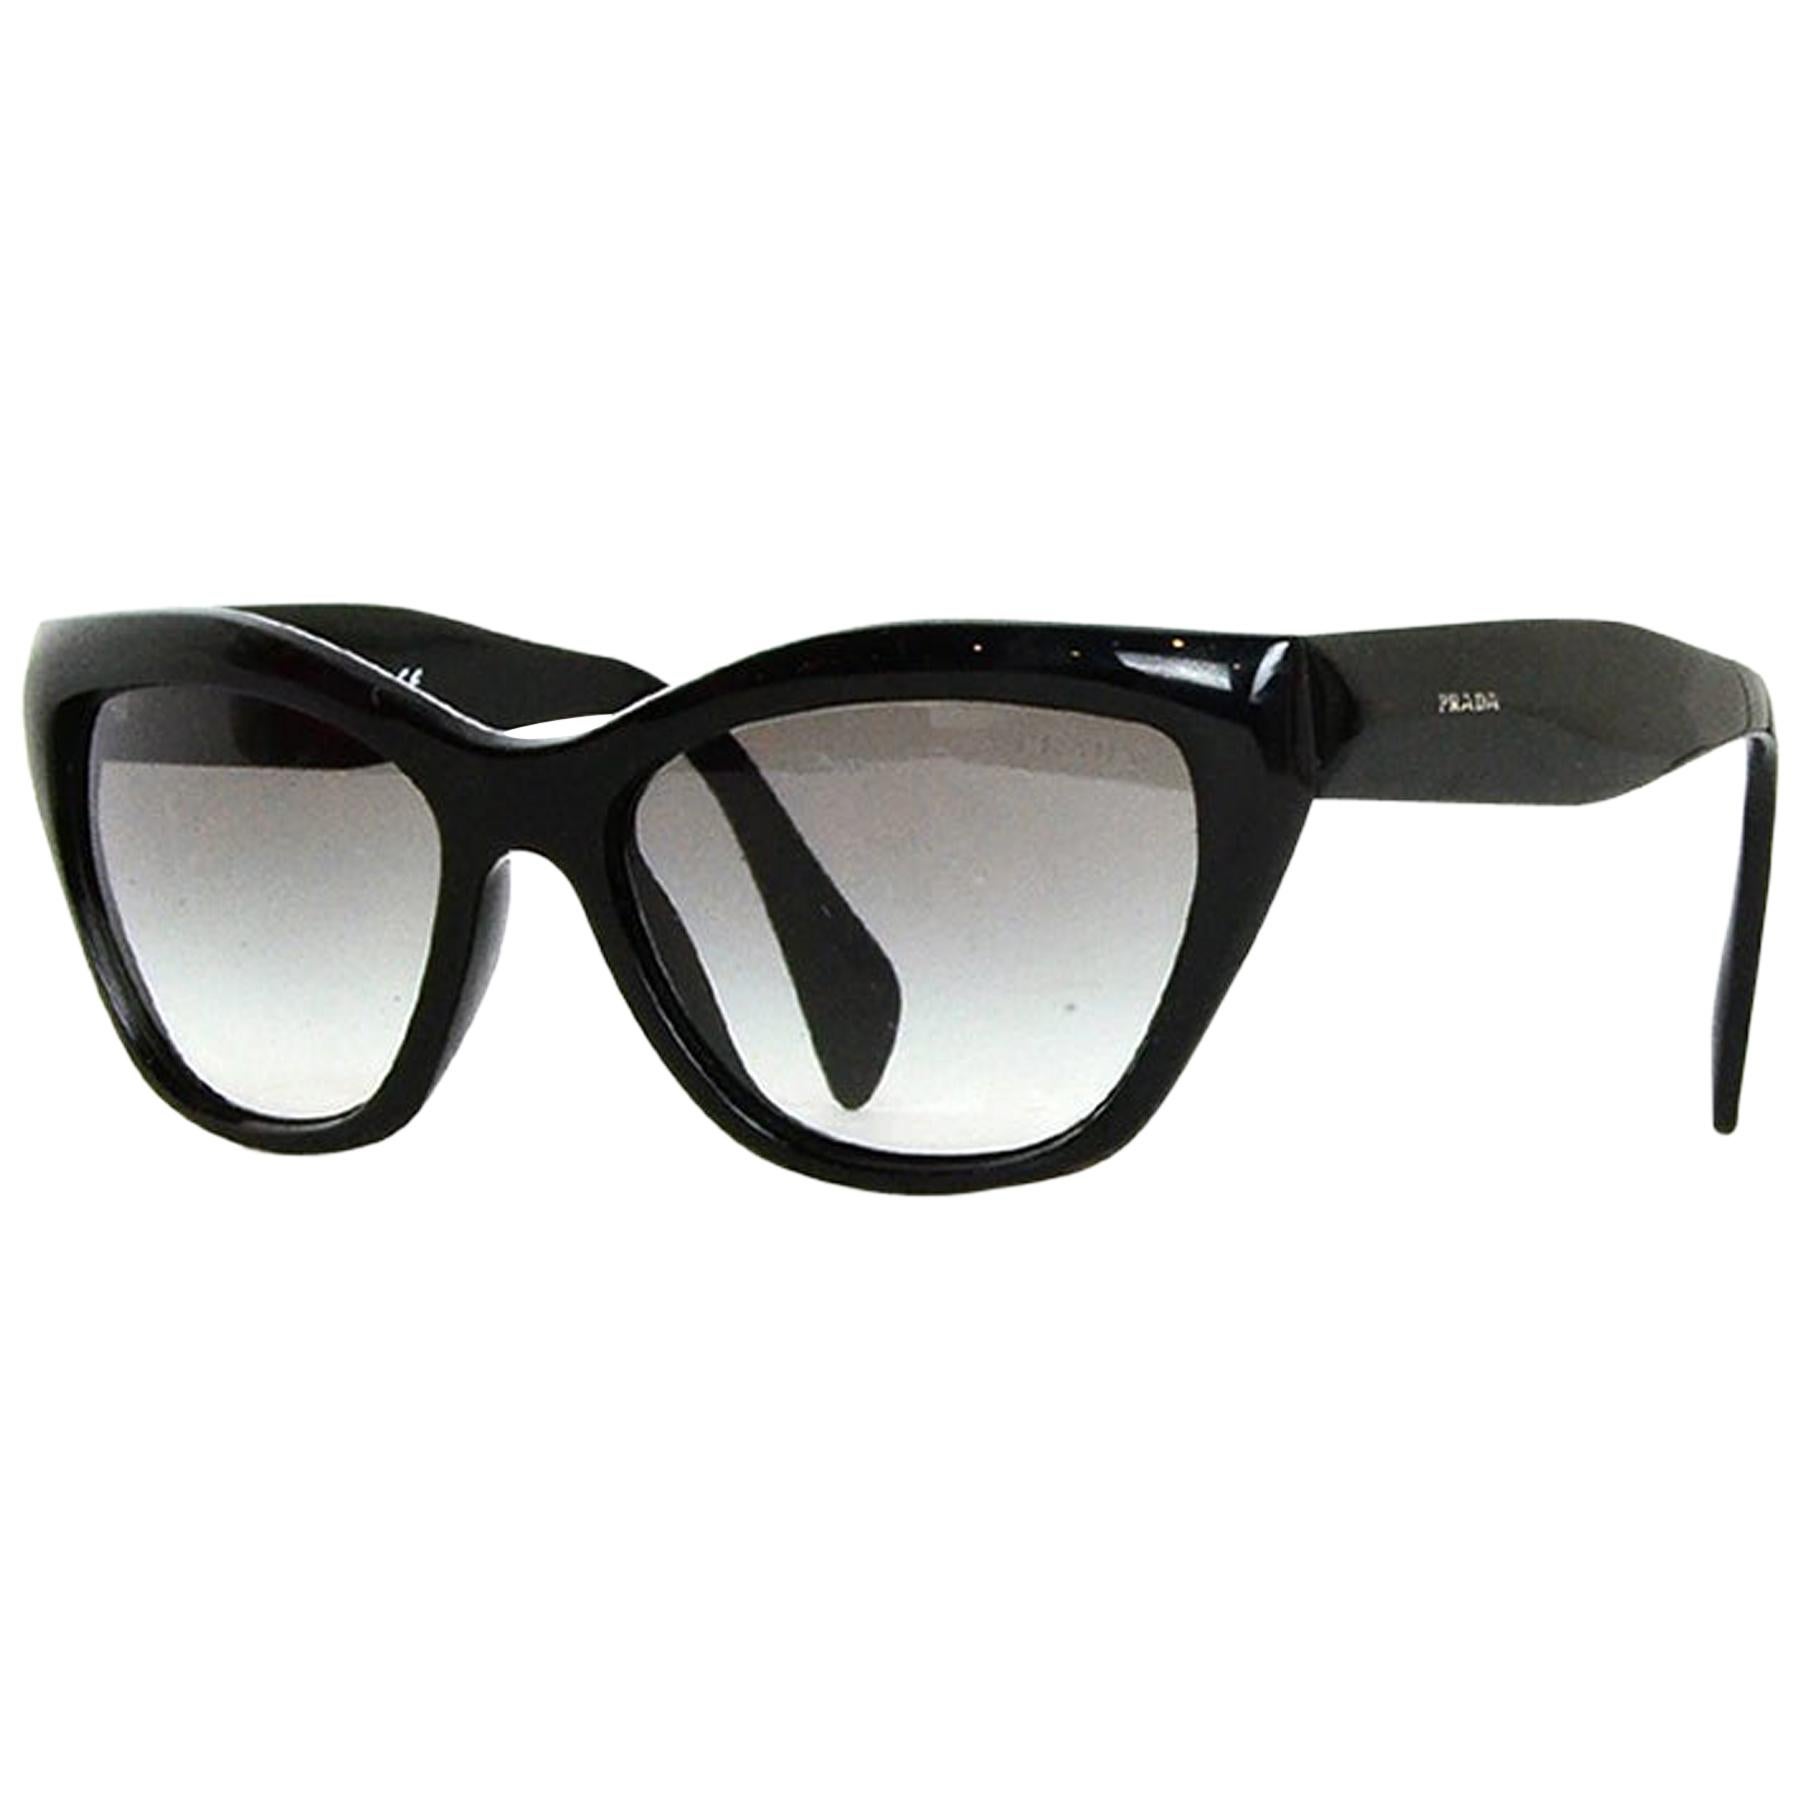 Prada Black Acetate Sunglasses 